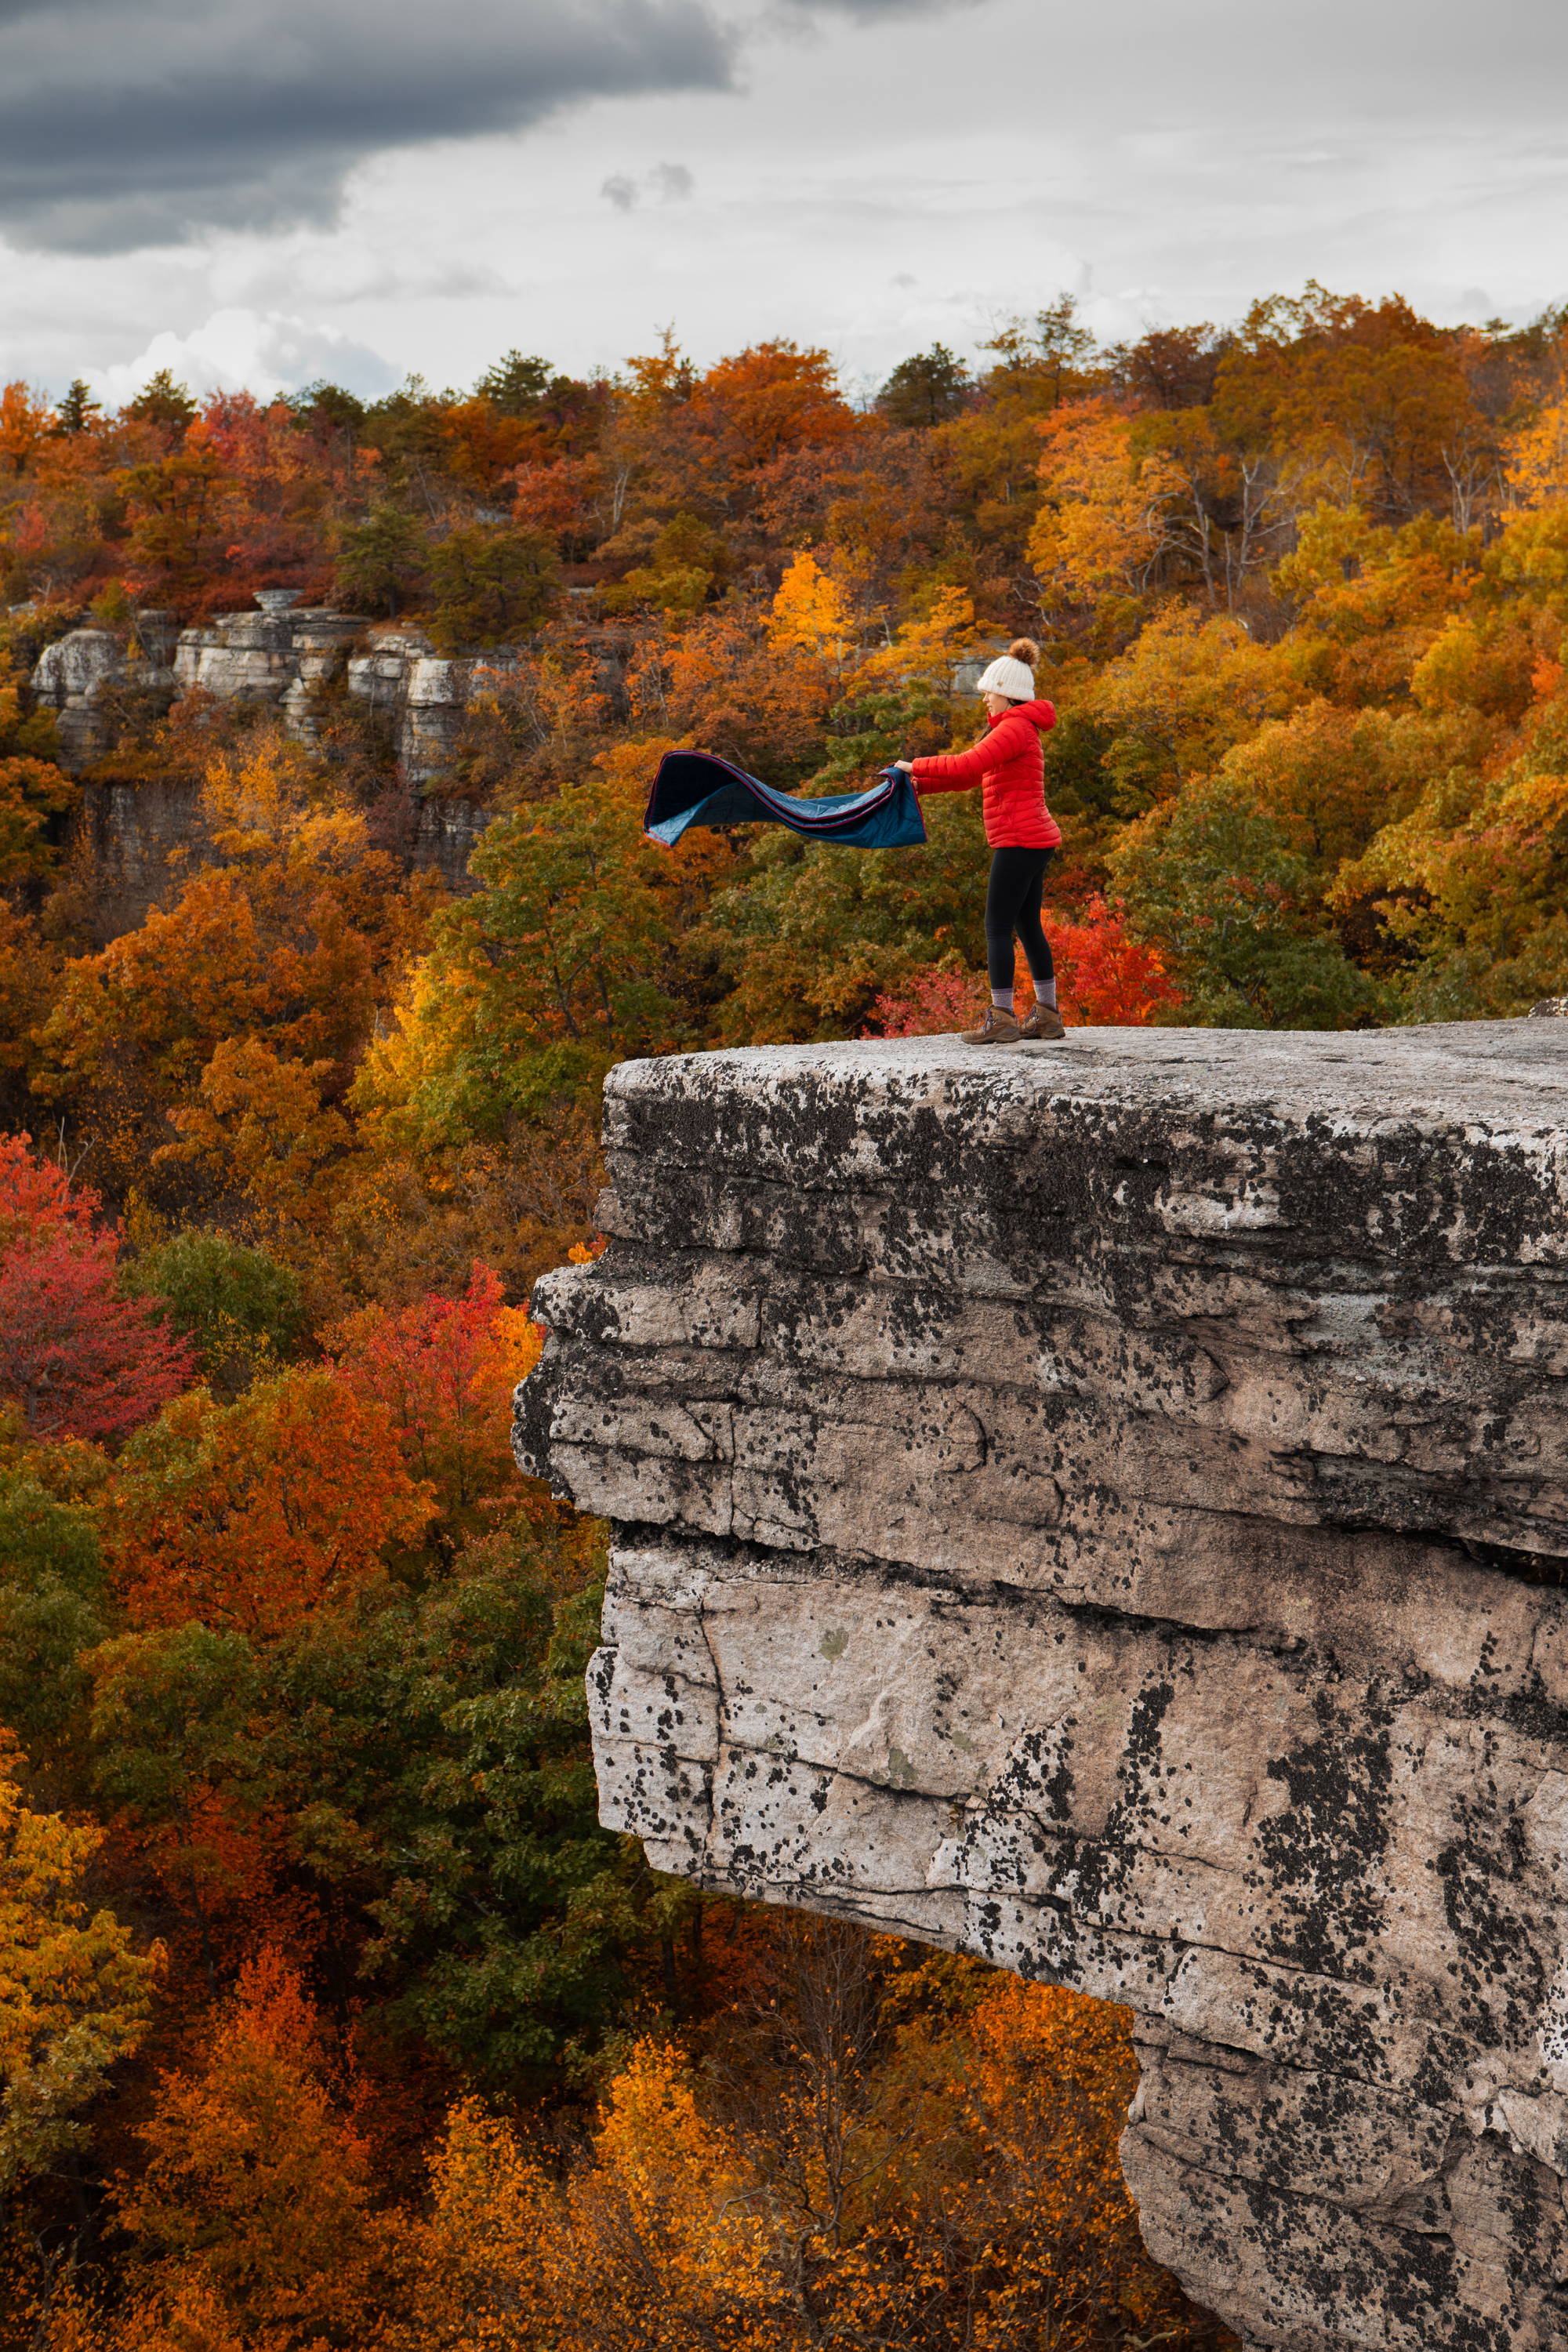 Woman shaking Rumpl blanket on cliff overlooking autumn landscape